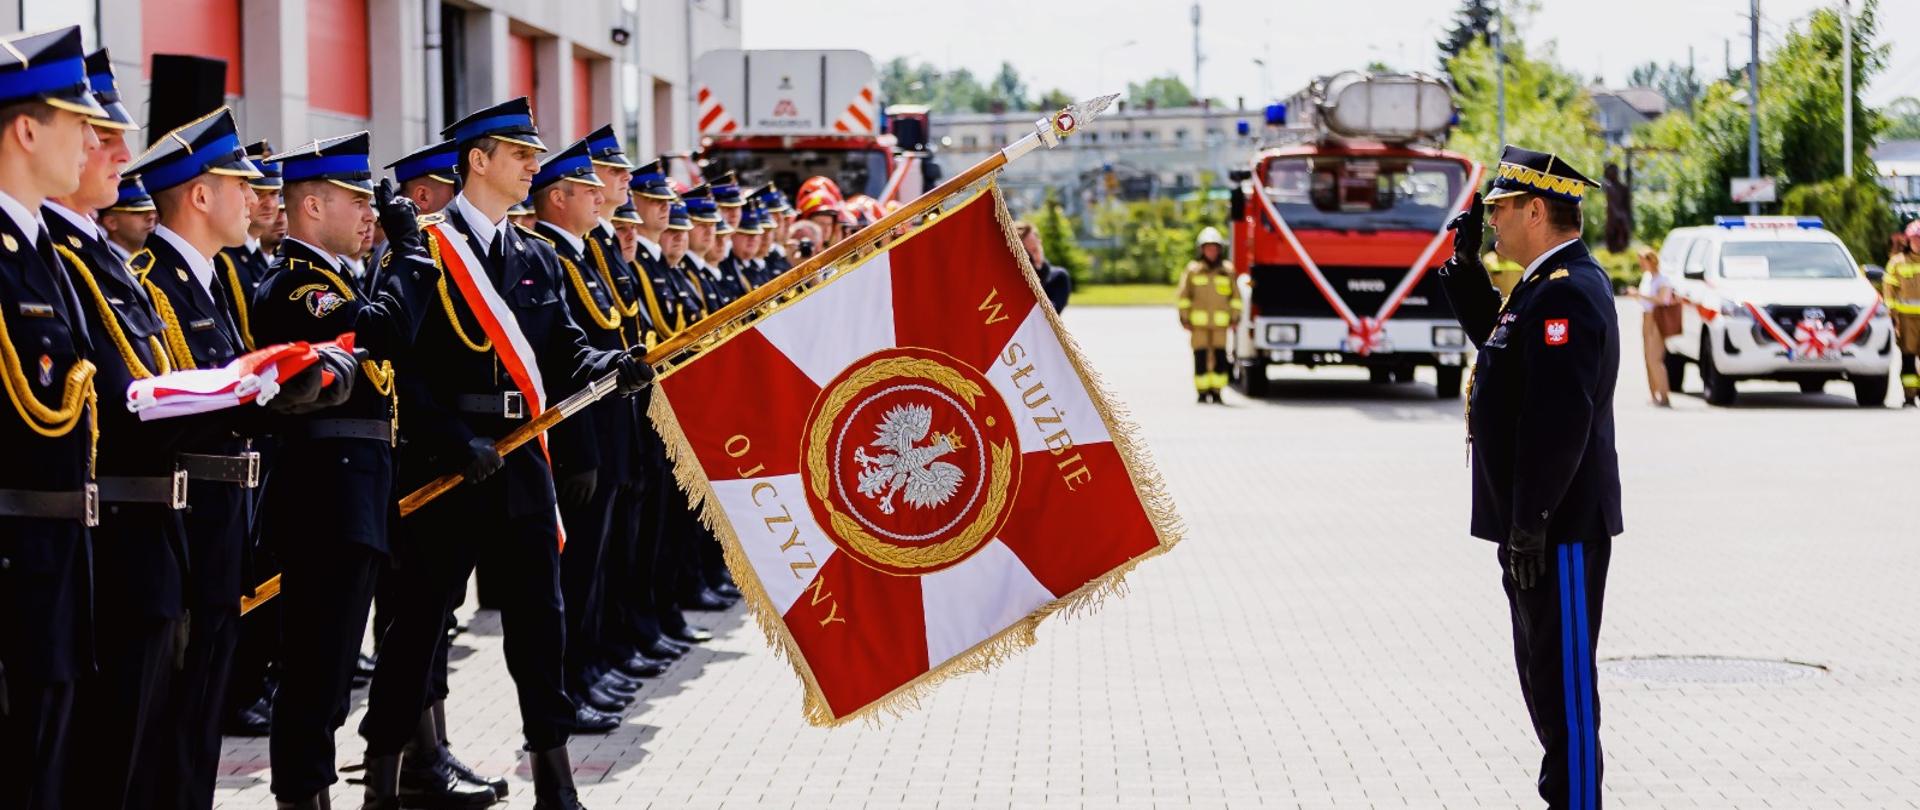 31 maja 2022 roku w Komendzie Miejskiej PSP w Bielsku-Białej odbyły się Powiatowe Obchody Dnia Strażaka połączone z Jubileuszem 30 – lecia powołania Państwowej Straży Pożarnej - przegląd pododdziałów. 